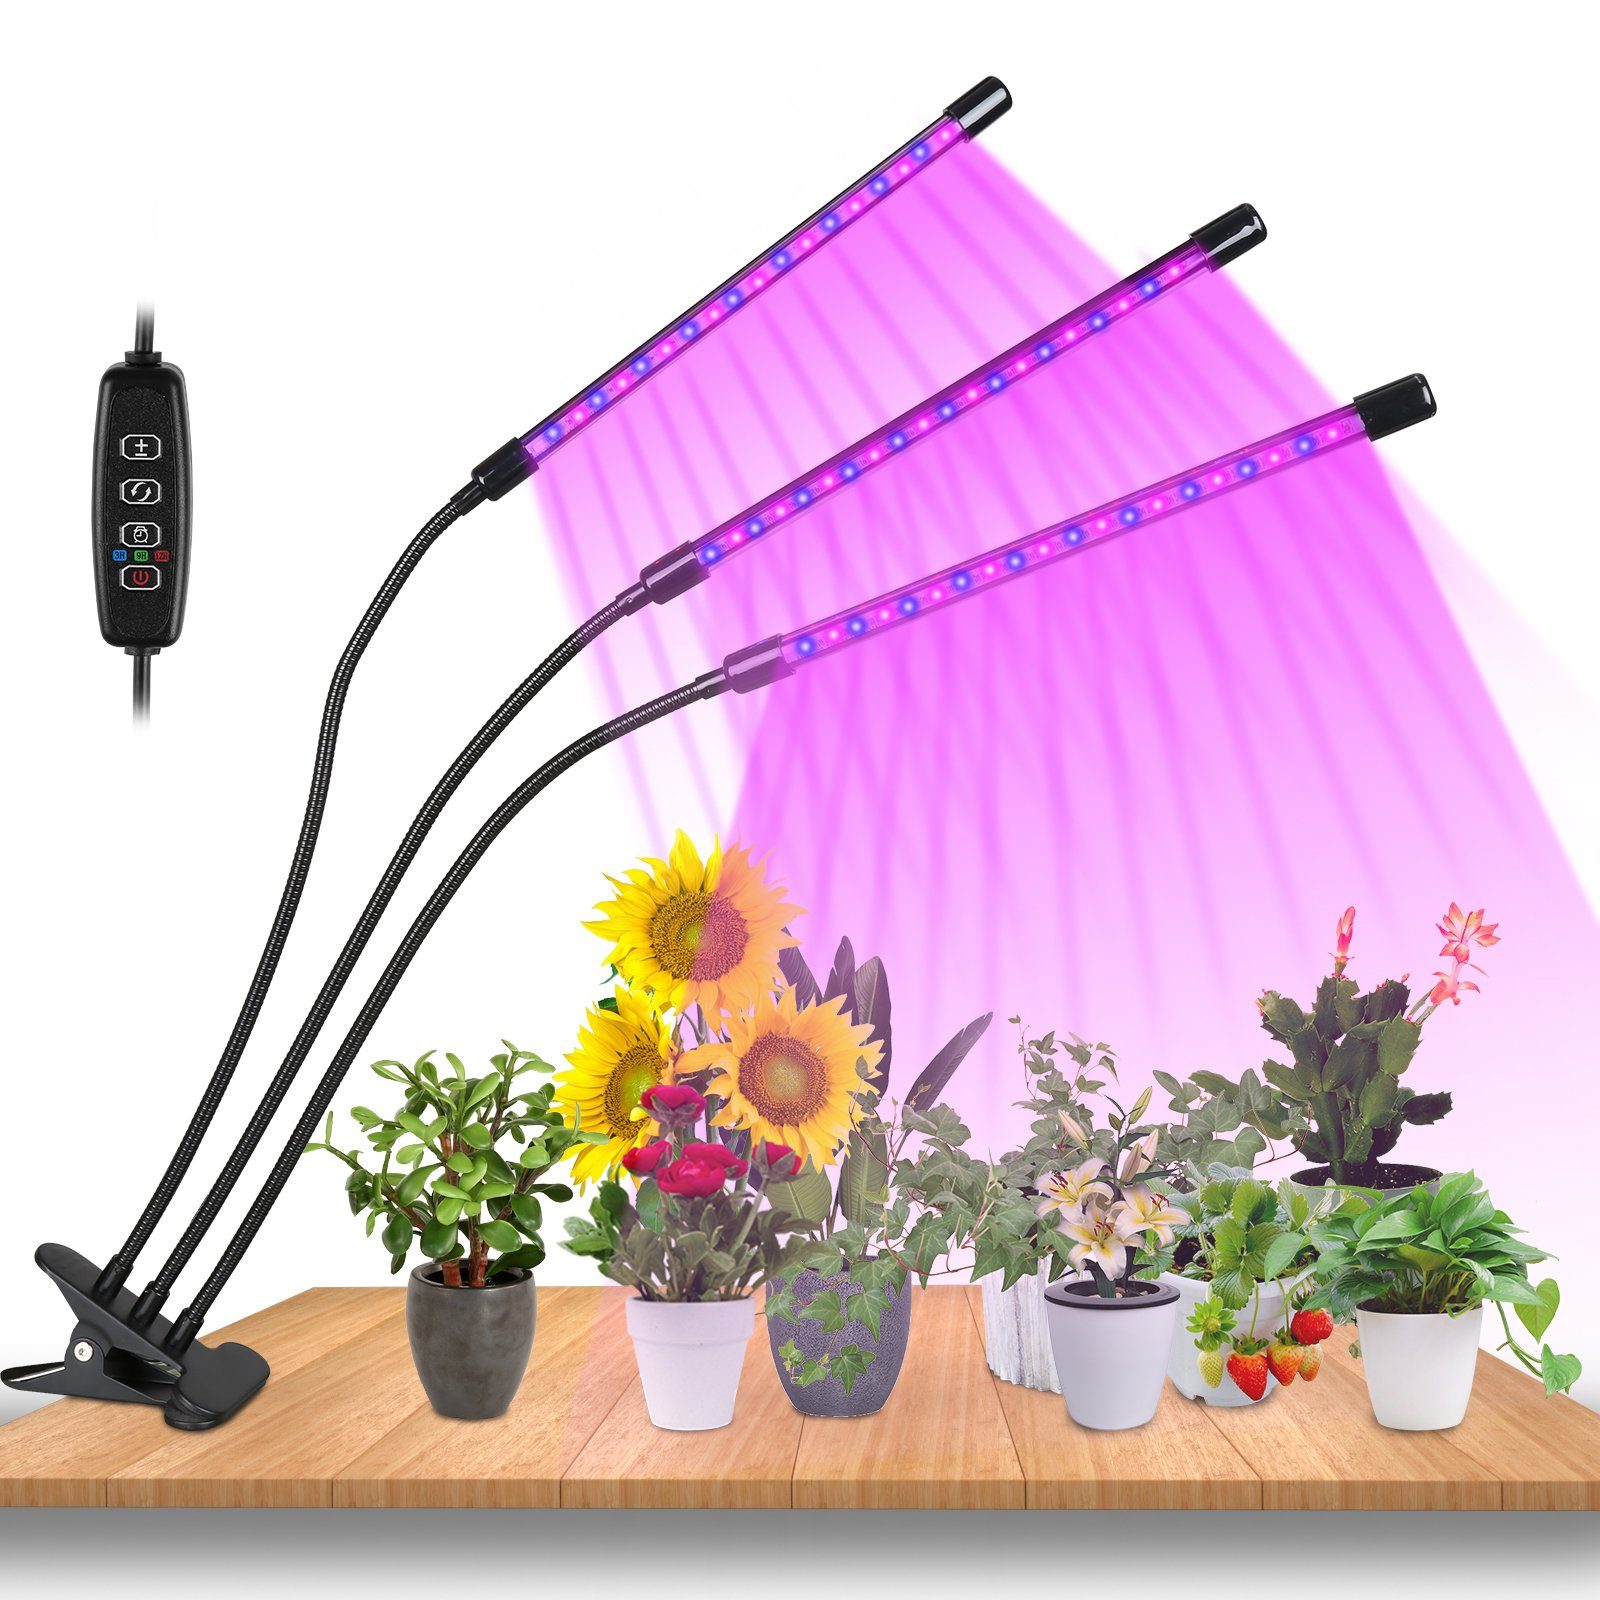 10 Helligkeitsstufen TolleTour Dimmbar 3 LED Pflanzenlampe Grow Pflanzenlicht 30W Modus, mit Wachstumslampe, Light Kopf Vollspektrum Licht 3